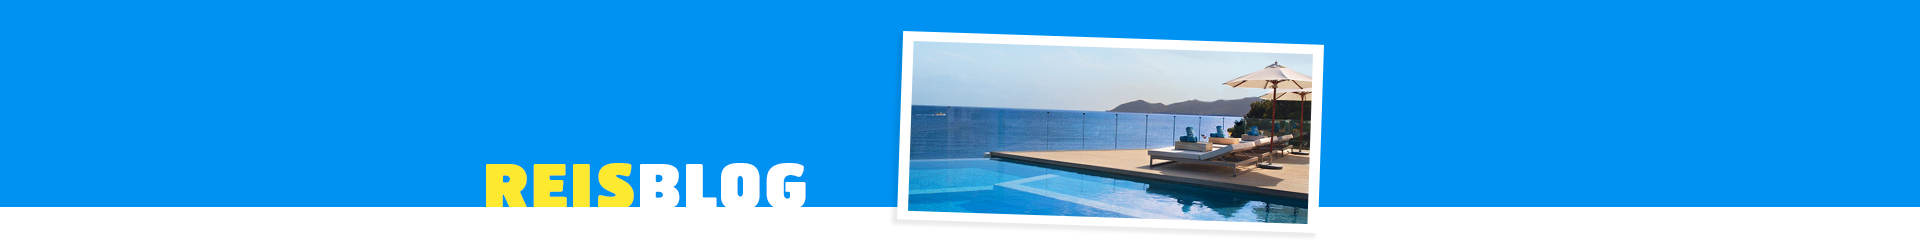 Hotel met een infinity zwembad, uitkijkend over de zee en bergen 